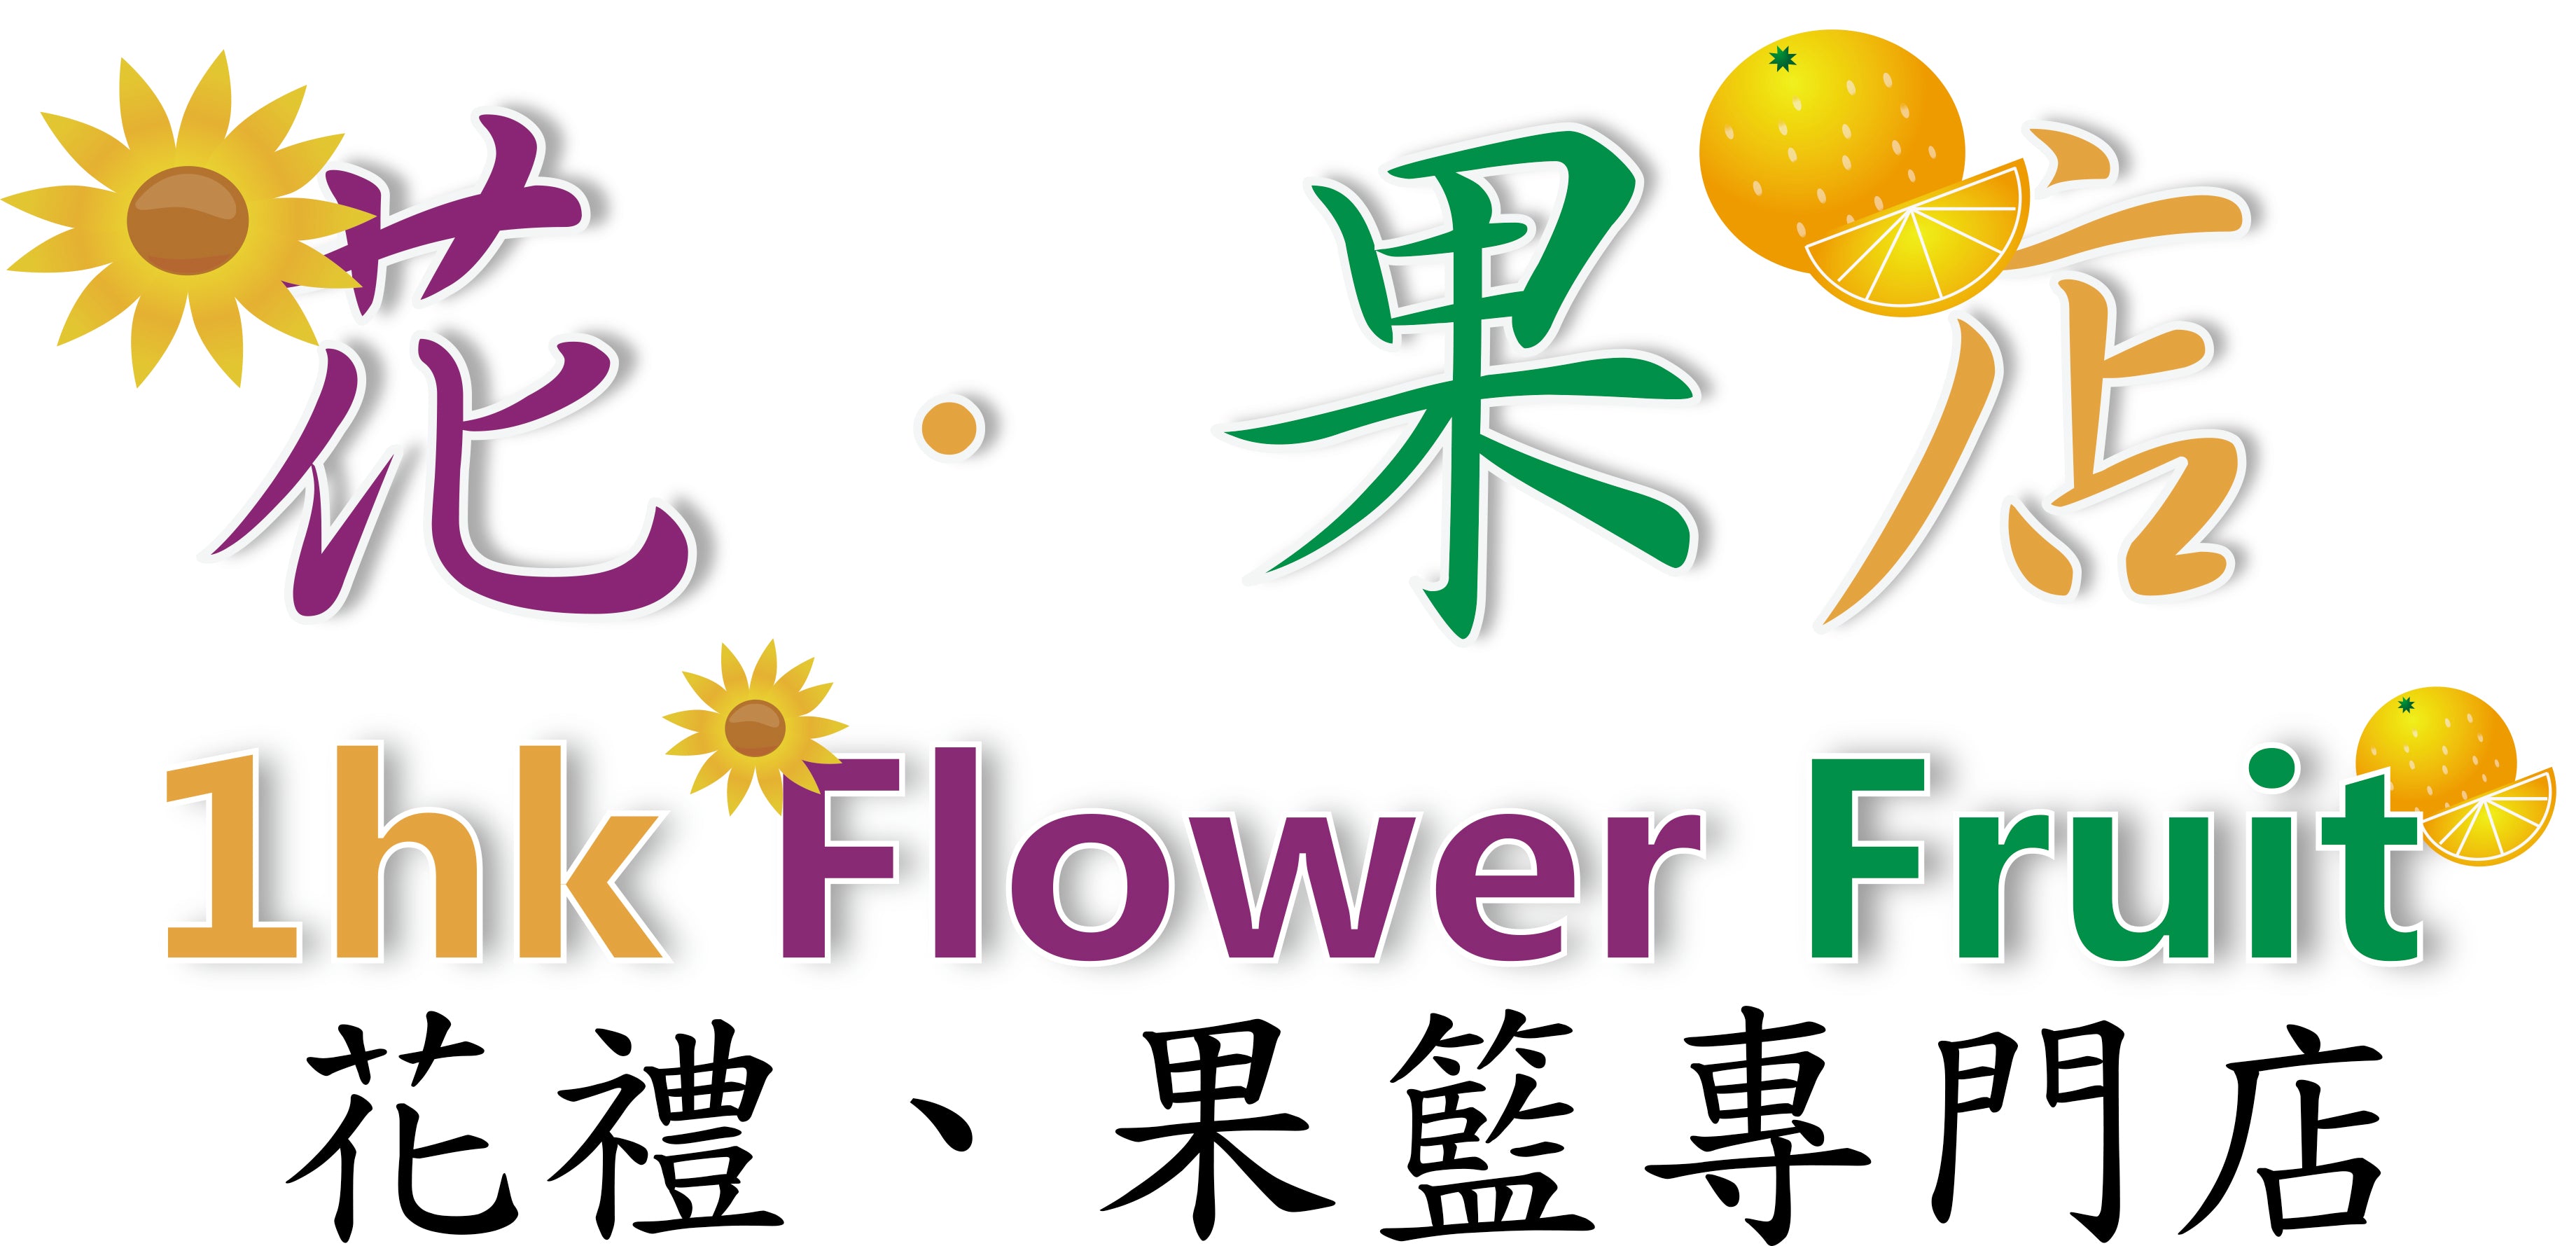 1hkflowerfruit.com